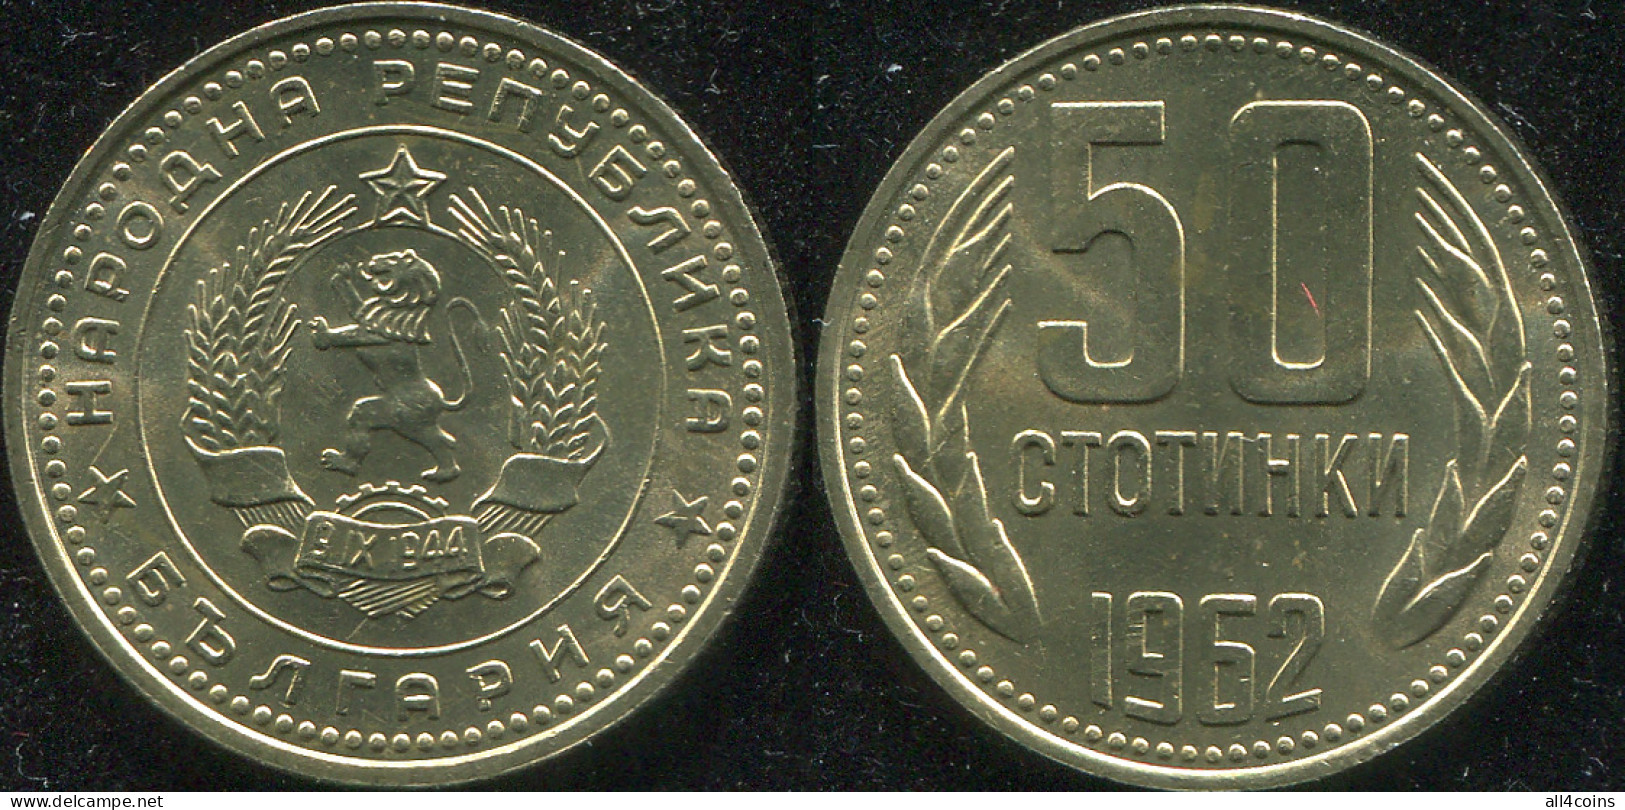 Bulgaria. 50 Stotinki. 1962 (Coin KM#64. Unc) - Bulgaria